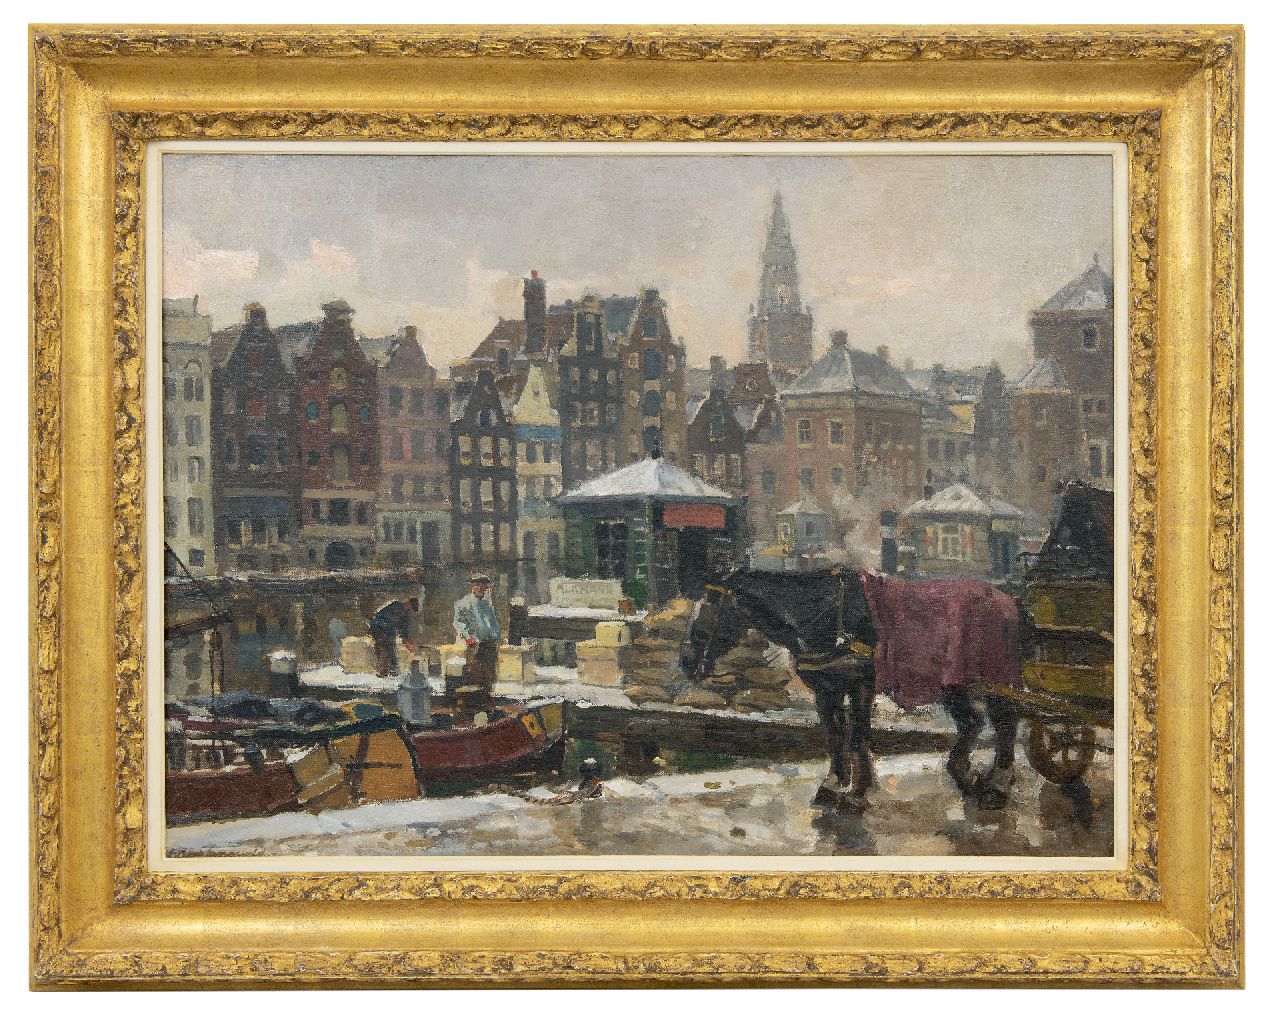 Langeveld F.A.  | Franciscus Arnoldus 'Frans' Langeveld | Schilderijen te koop aangeboden | Het Damrak in Amsterdam, olieverf op doek 61,0 x 81,2 cm, gesigneerd linksonder